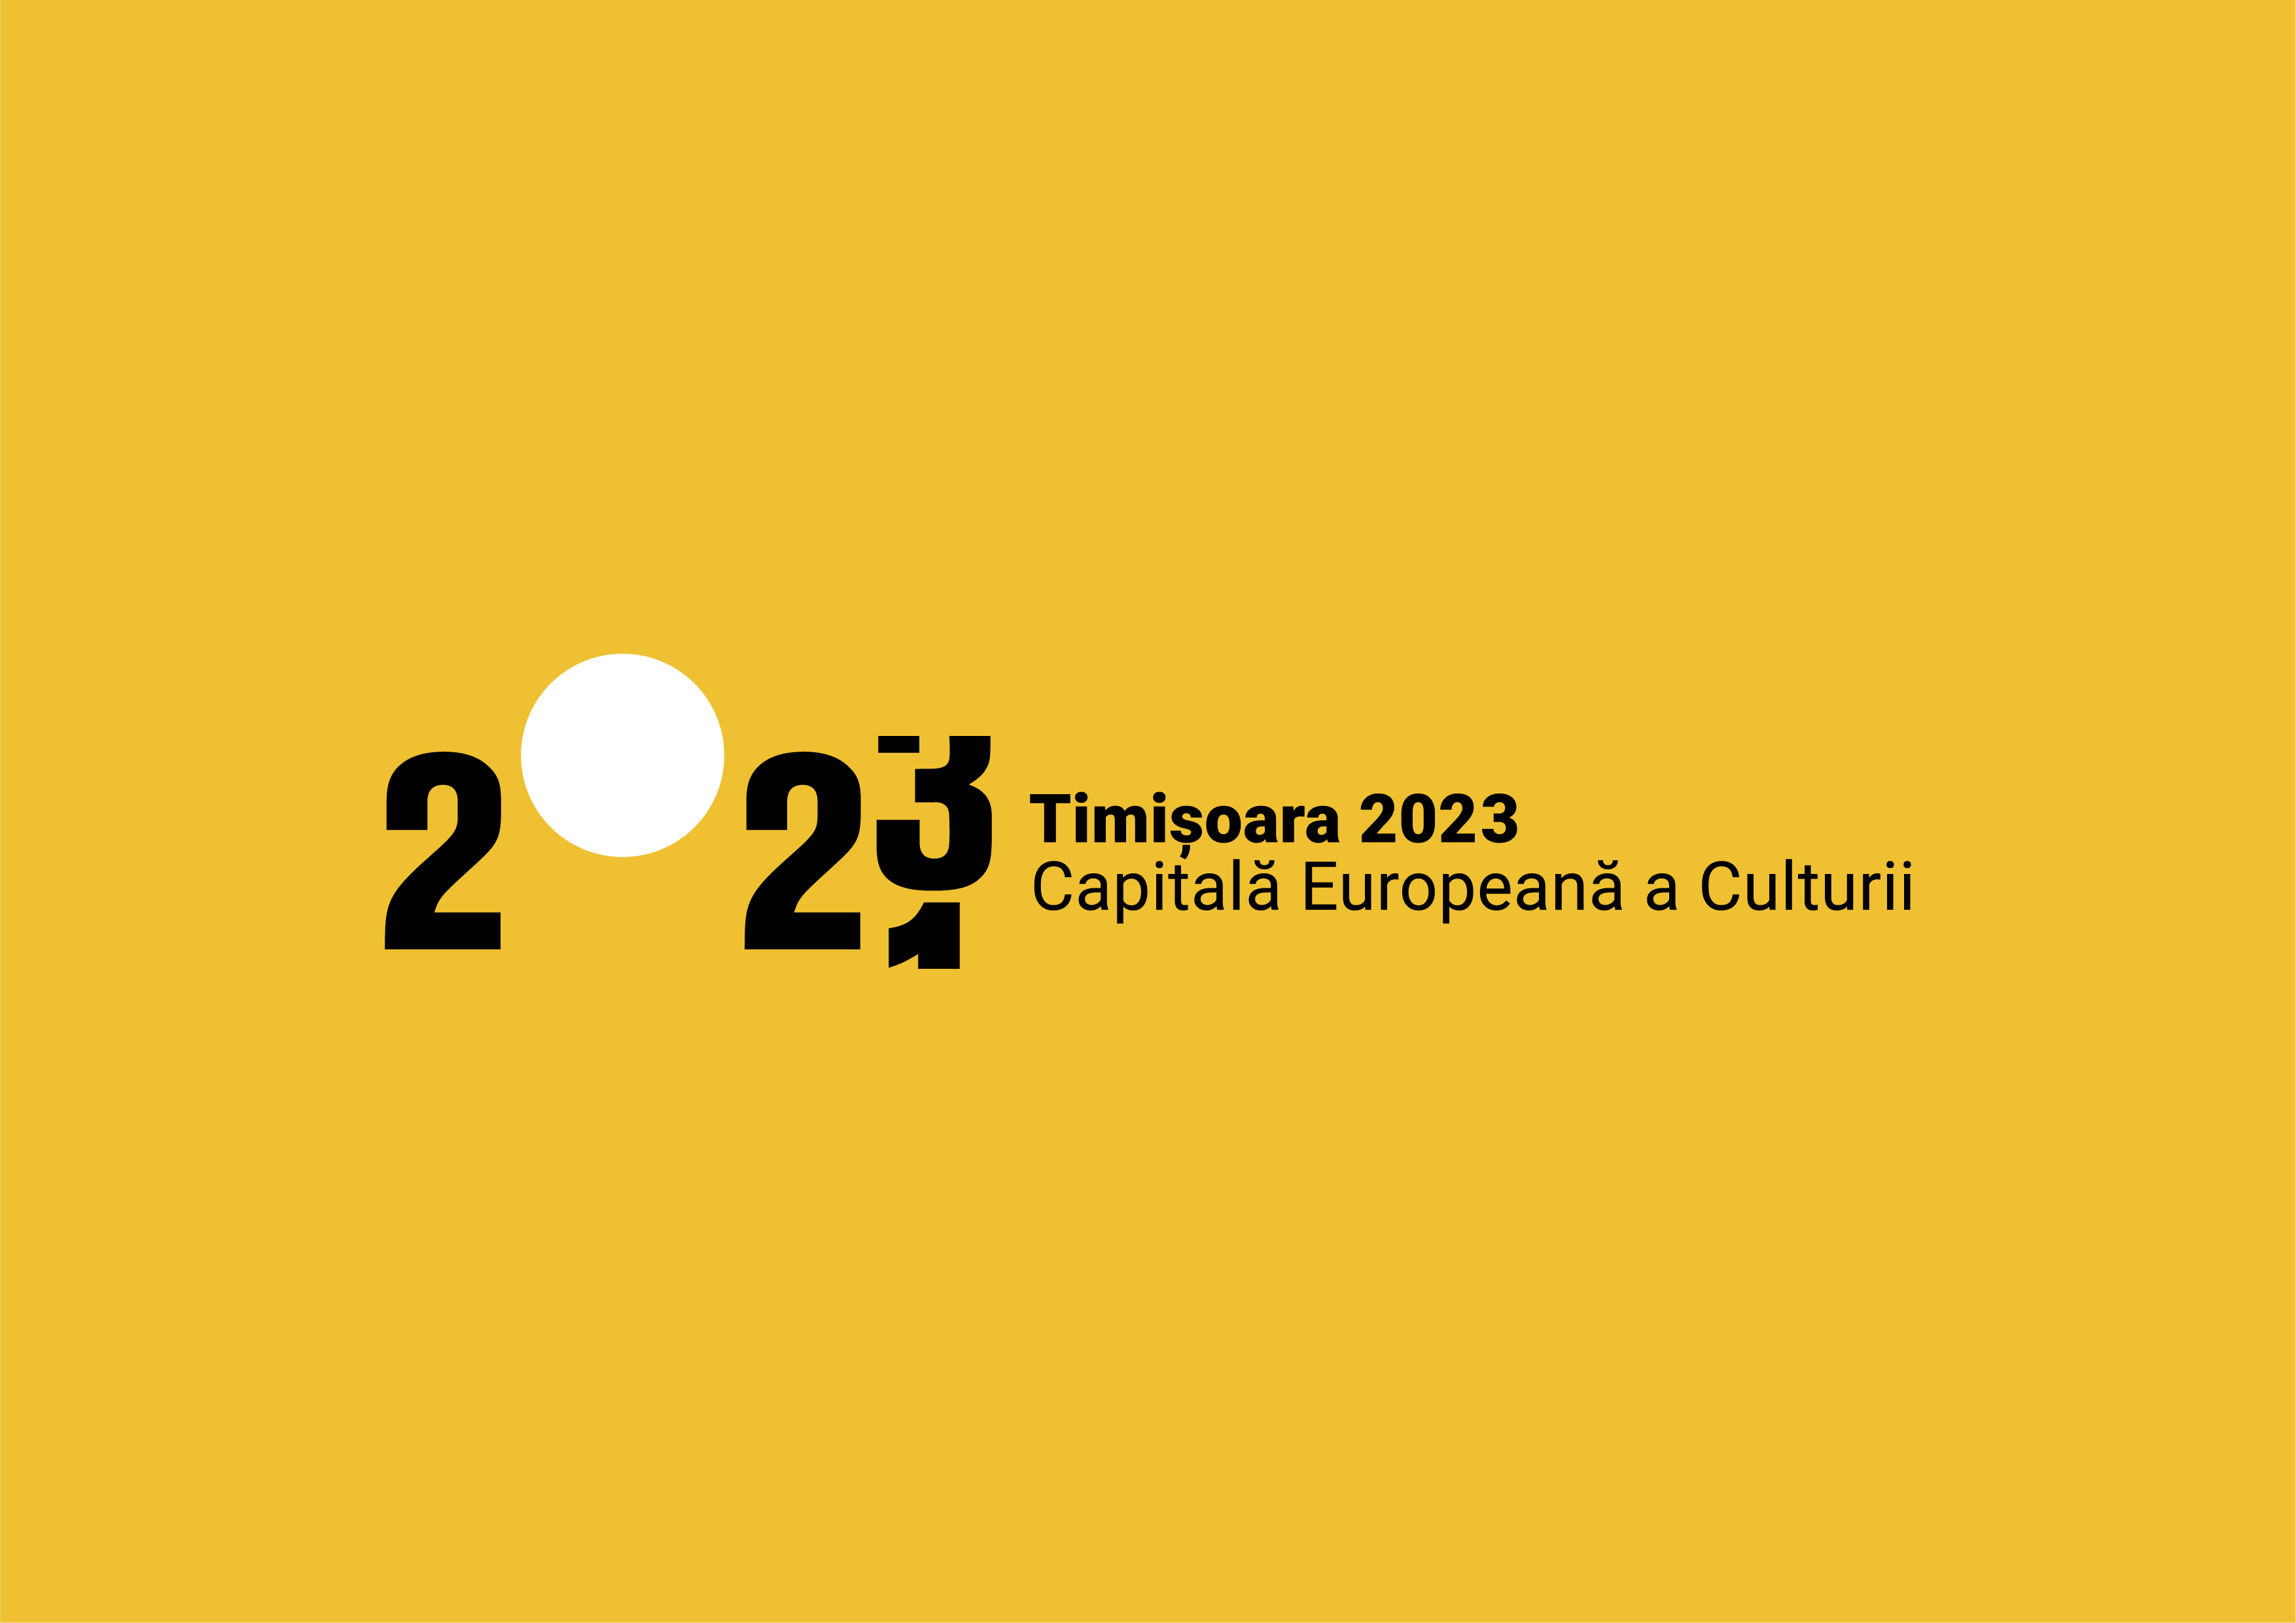 Timisoara 2021 officially becomes Timisoara 2023